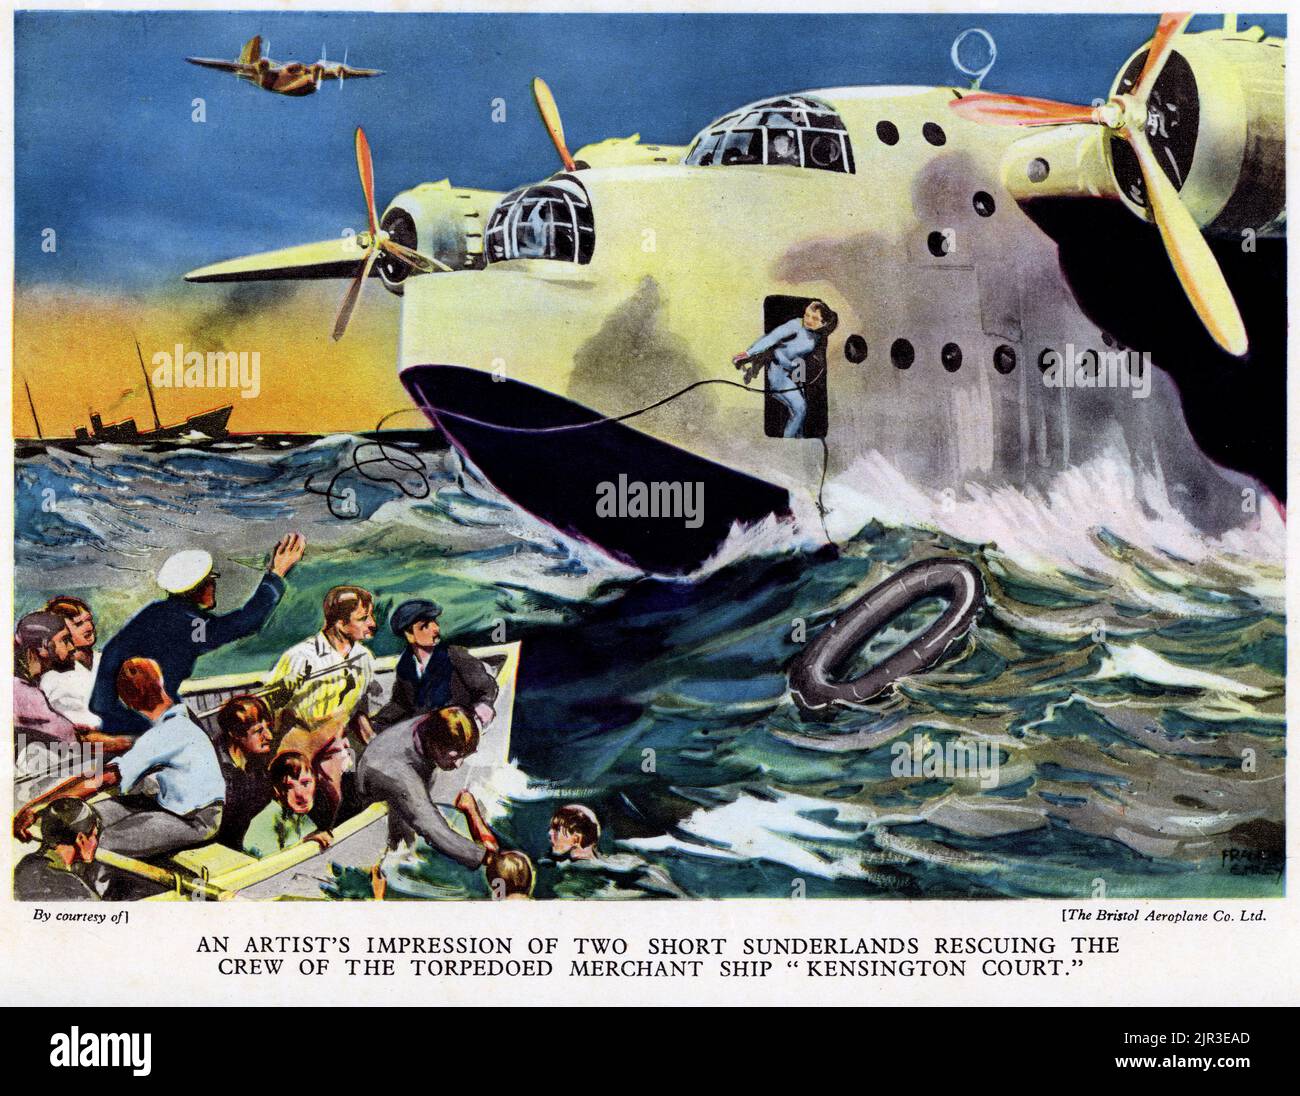 Halbton von zwei kurzen Sunderlands, die zur Rettung der Besatzung des torpedierten Handelsschiffs Kingsington Court, World war Two, fliegen, veröffentlicht 1942. Stockfoto